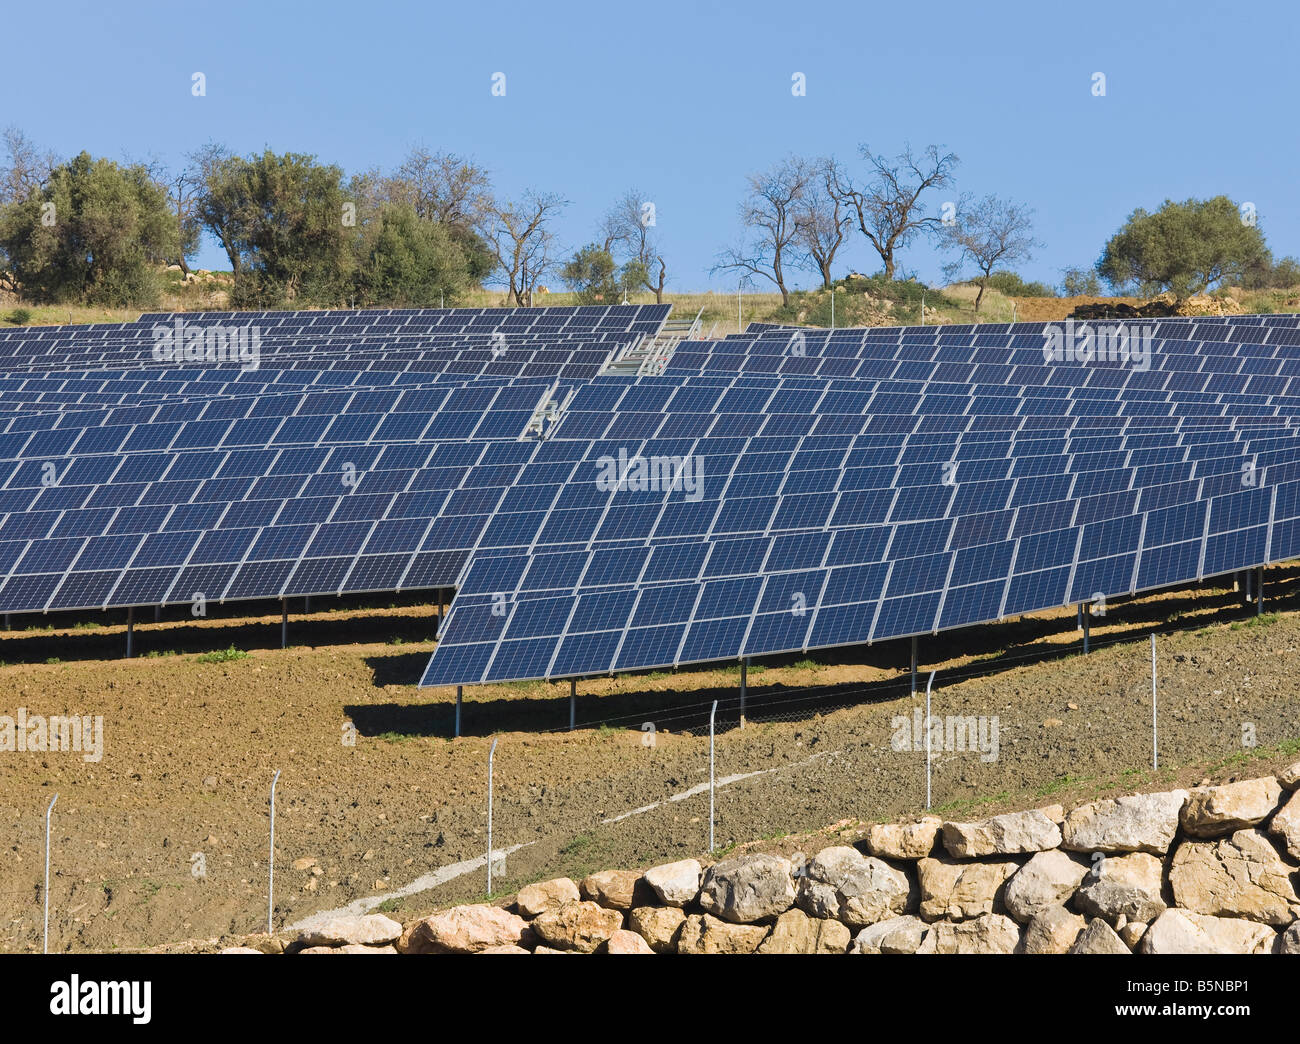 Les cellules photovoltaïques ou solaires utilisés pour recueillir l'énergie solaire, Colmenar, Espagne Banque D'Images